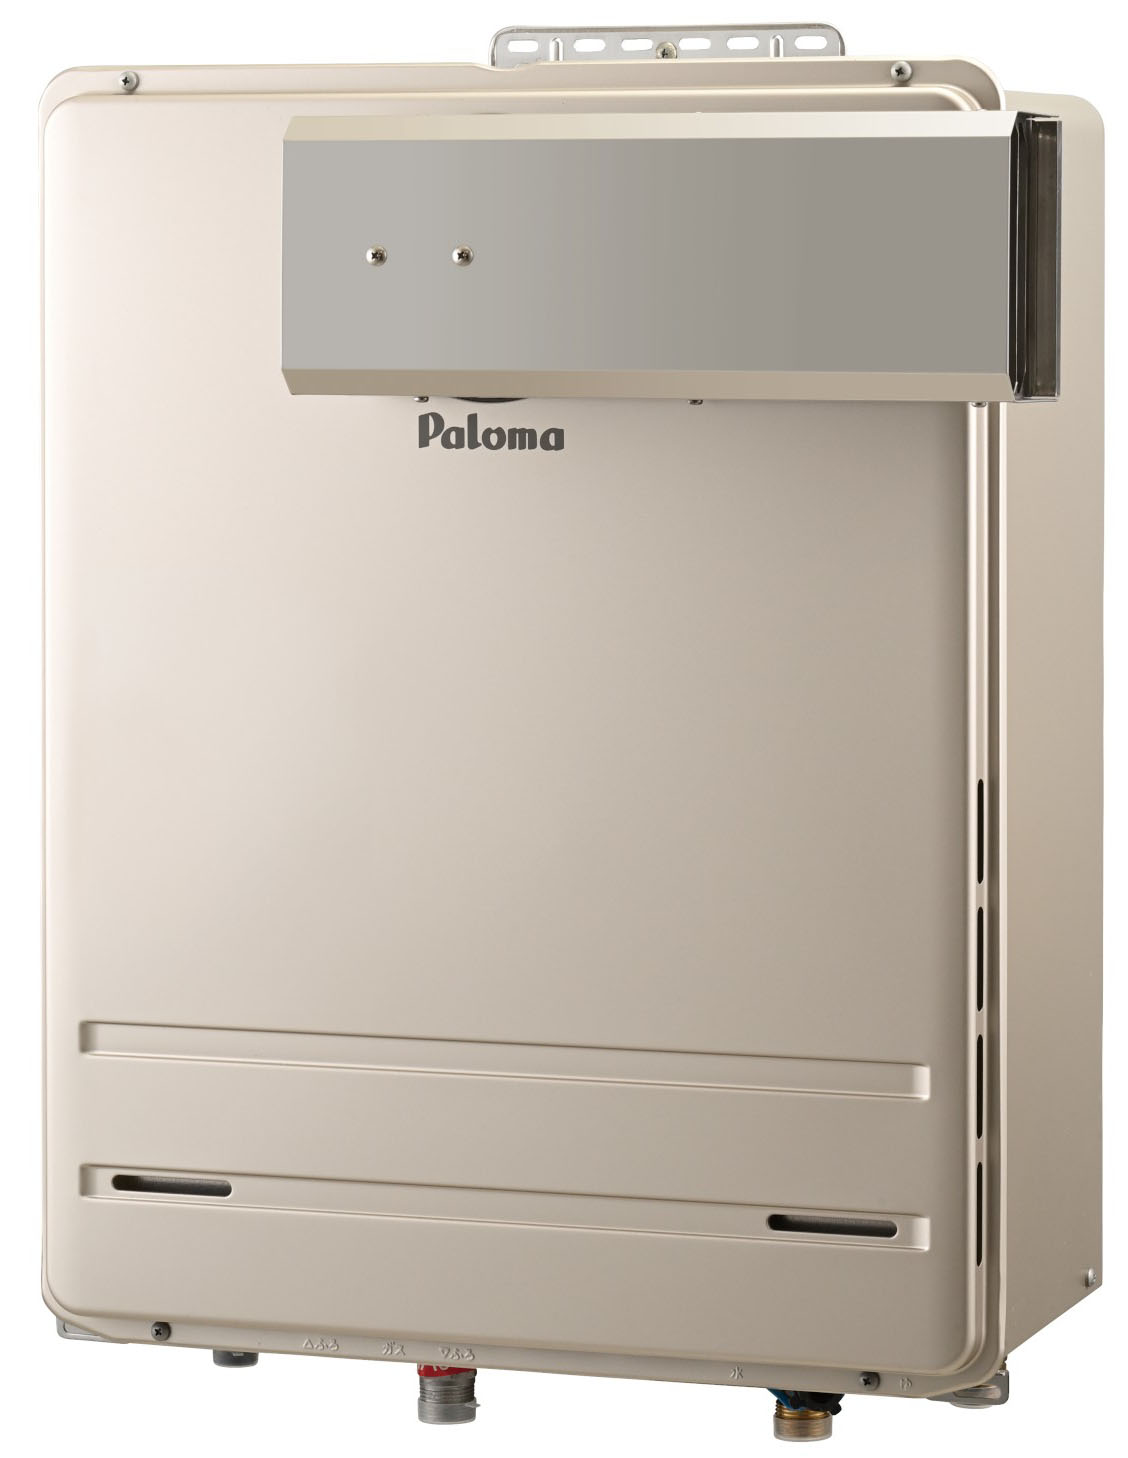 新販売特価 [FH-1613SAWL-13A] 壁掛型・PS標準設置型 パロマ ガス給湯器 オート 16号 給水接続15A 従来型 リモコン 給湯器 